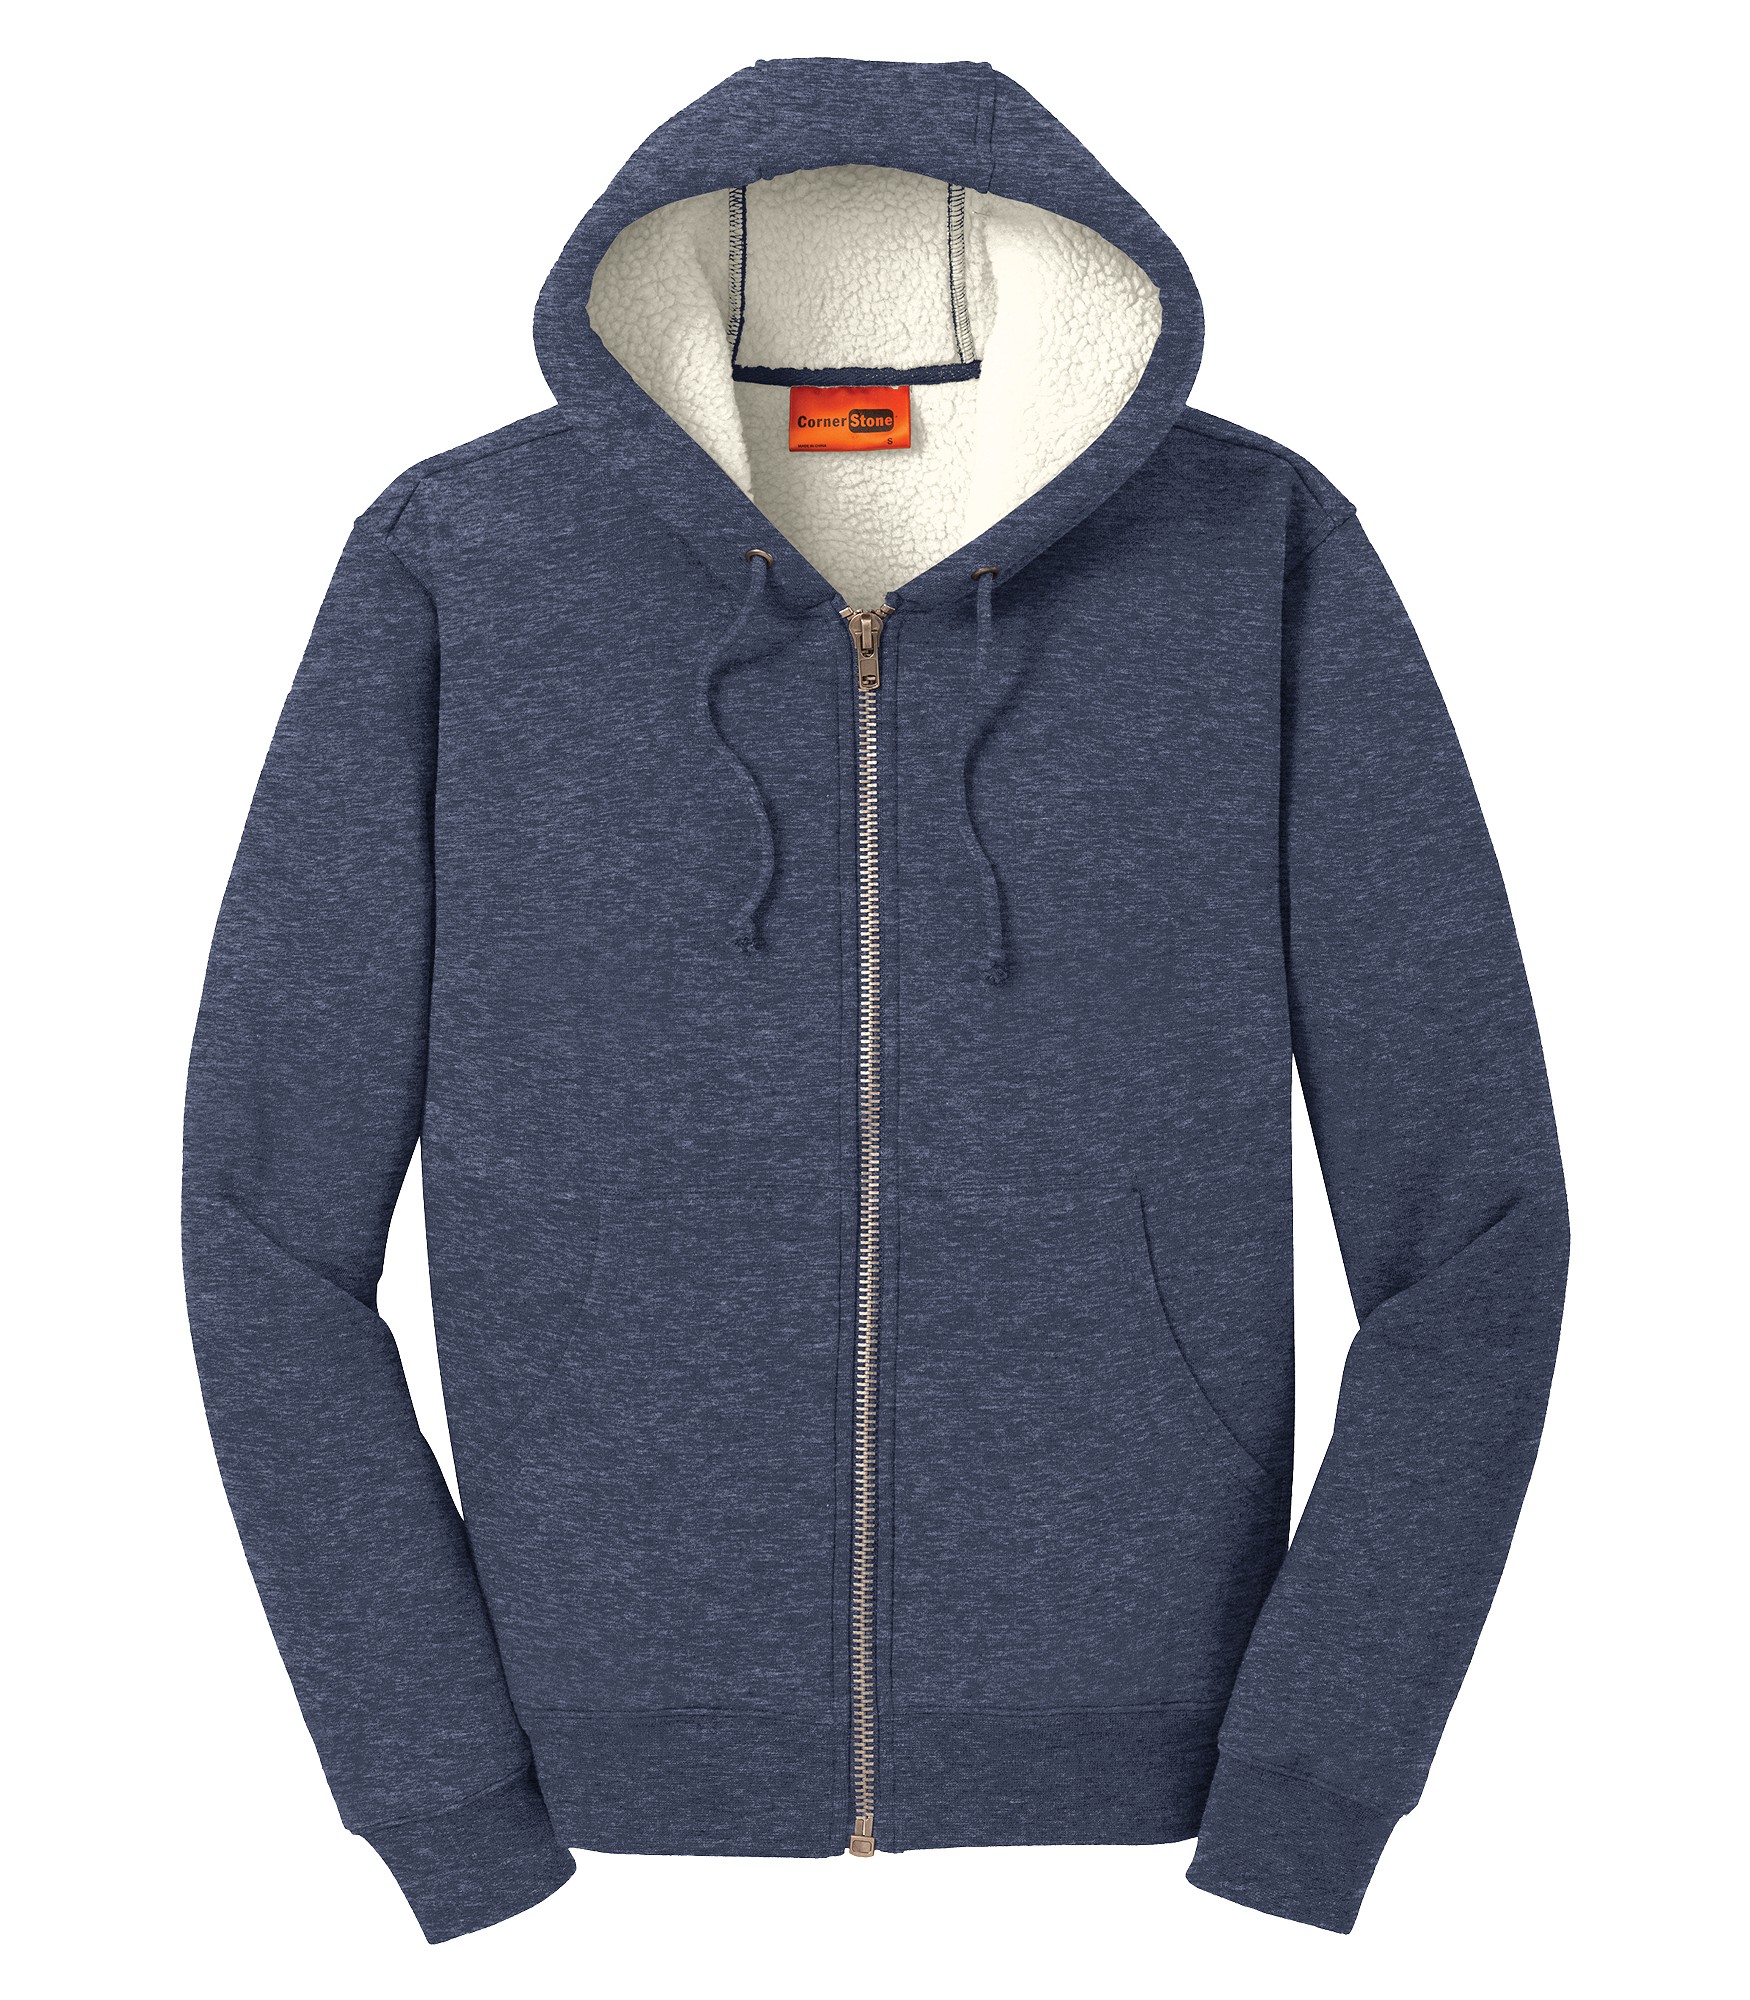 Amp Us Cornerstone® Heavyweight Sherpa Lined Hooded Fleece Jacket